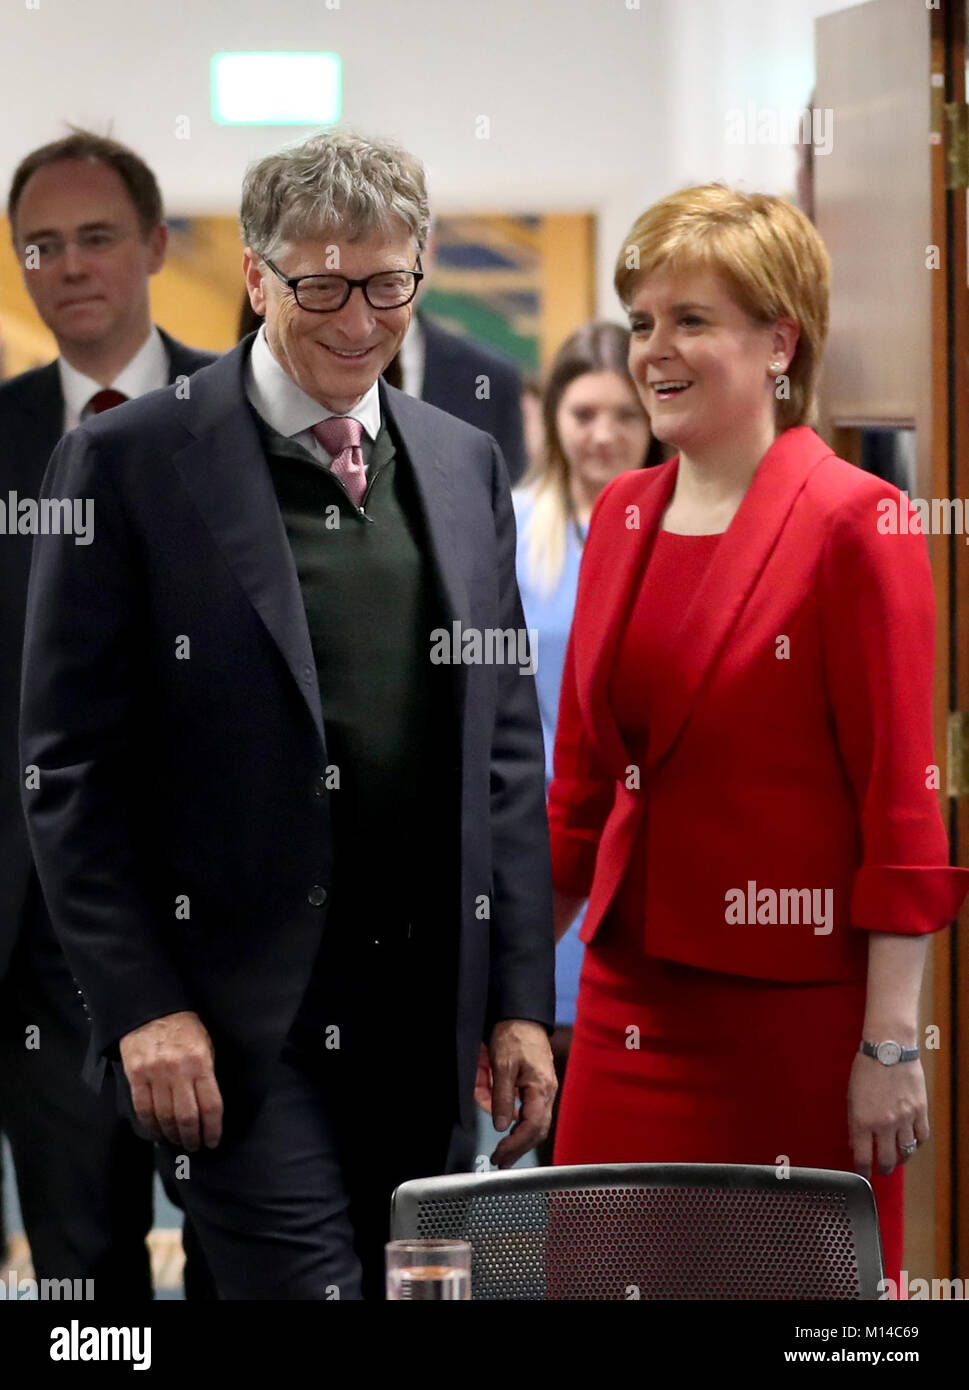 Bill Gates incontra il Primo Ministro Nicola Storione al St Andrew's House, Edimburgo, di sentire una presentazione sul lavoro svolto come parte del NHS il programma di cittadinanza globale. Foto Stock